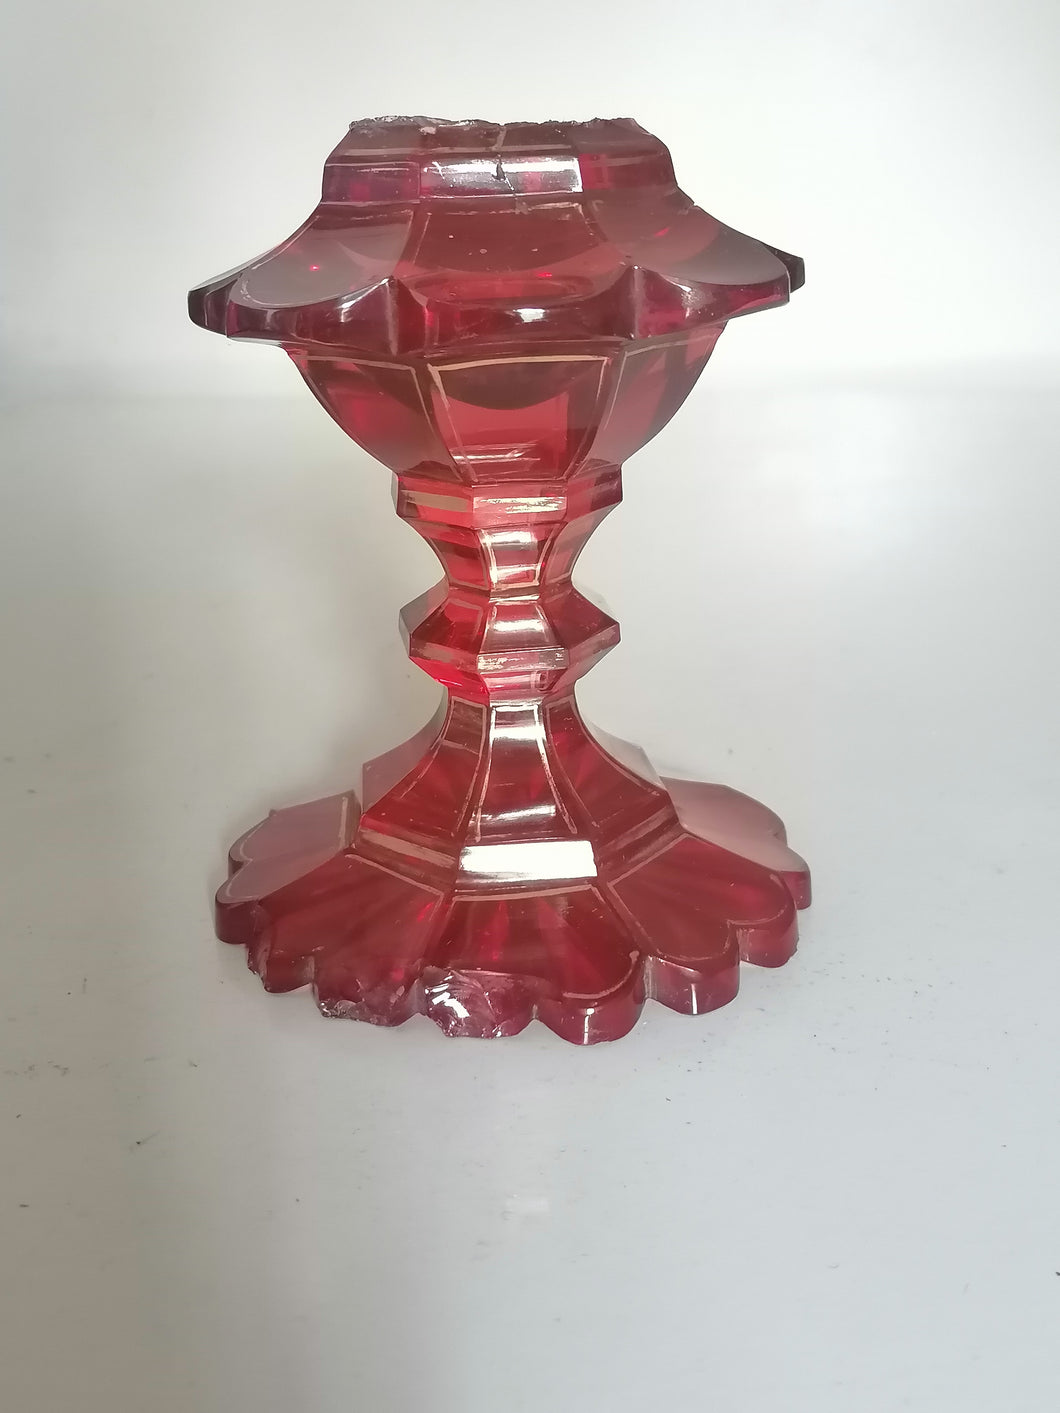 Pieds de lampe de table en cristal rouge, époque 18ème, 